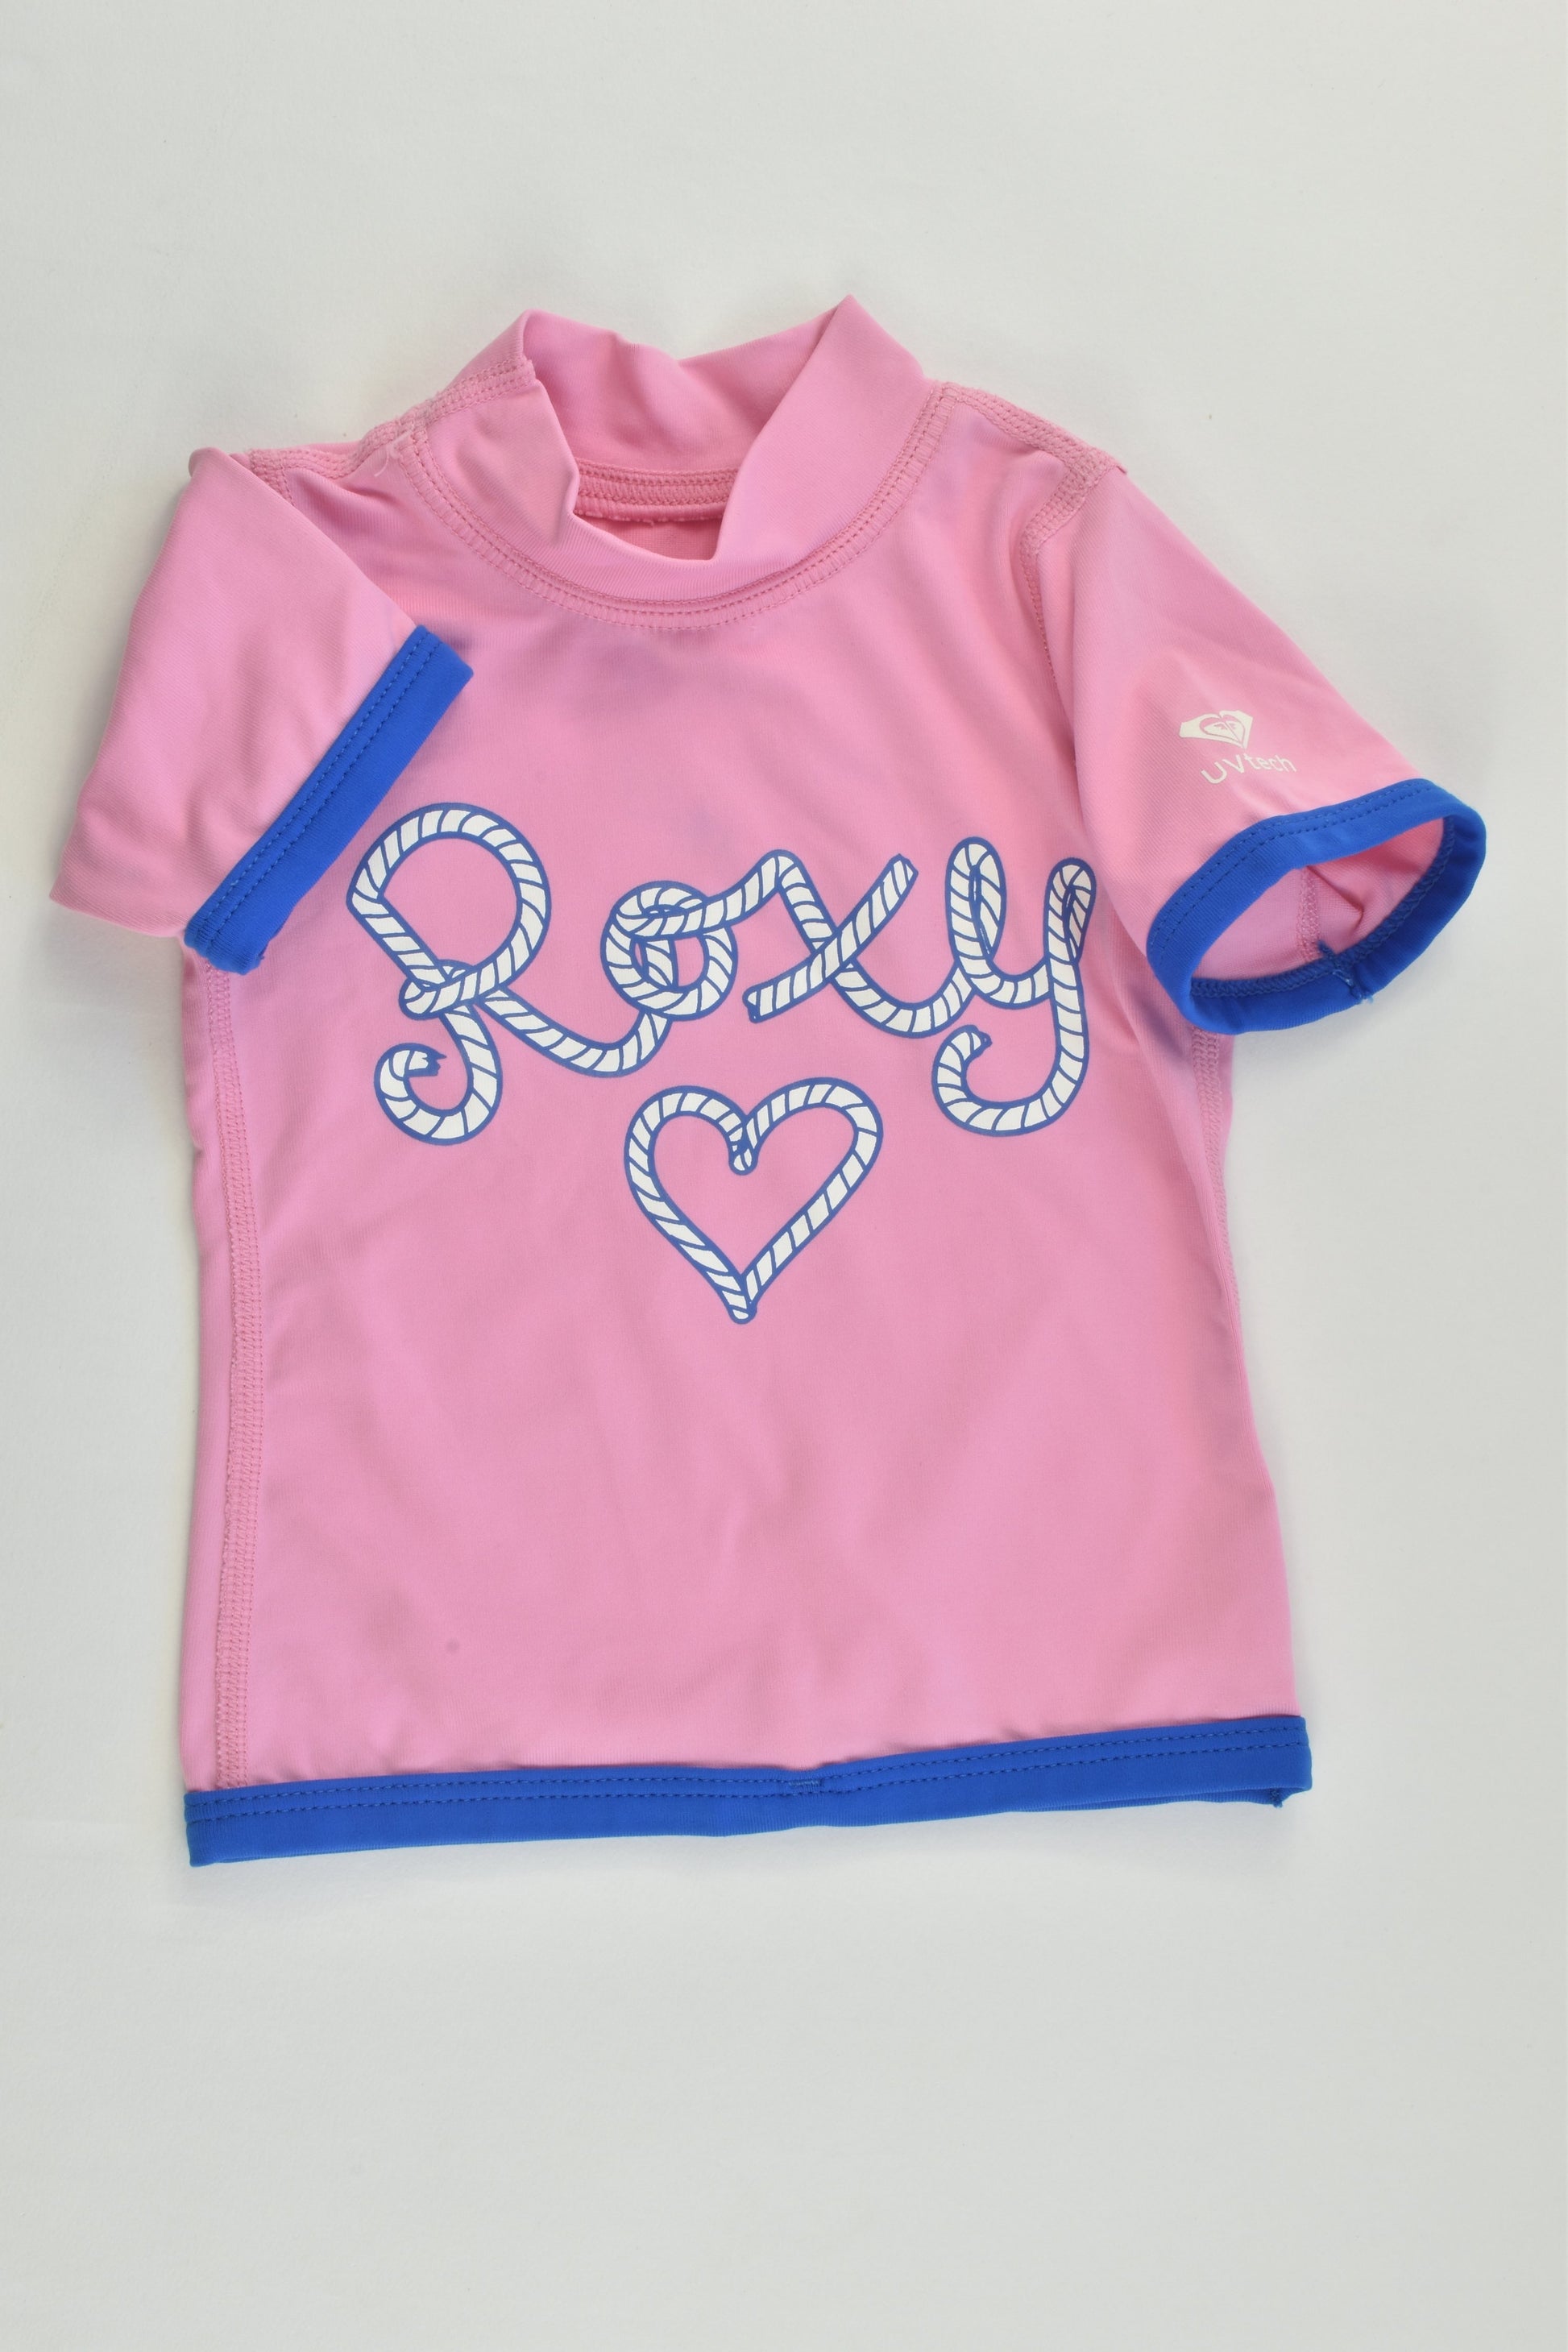 Roxy Size 00 Rashie Top